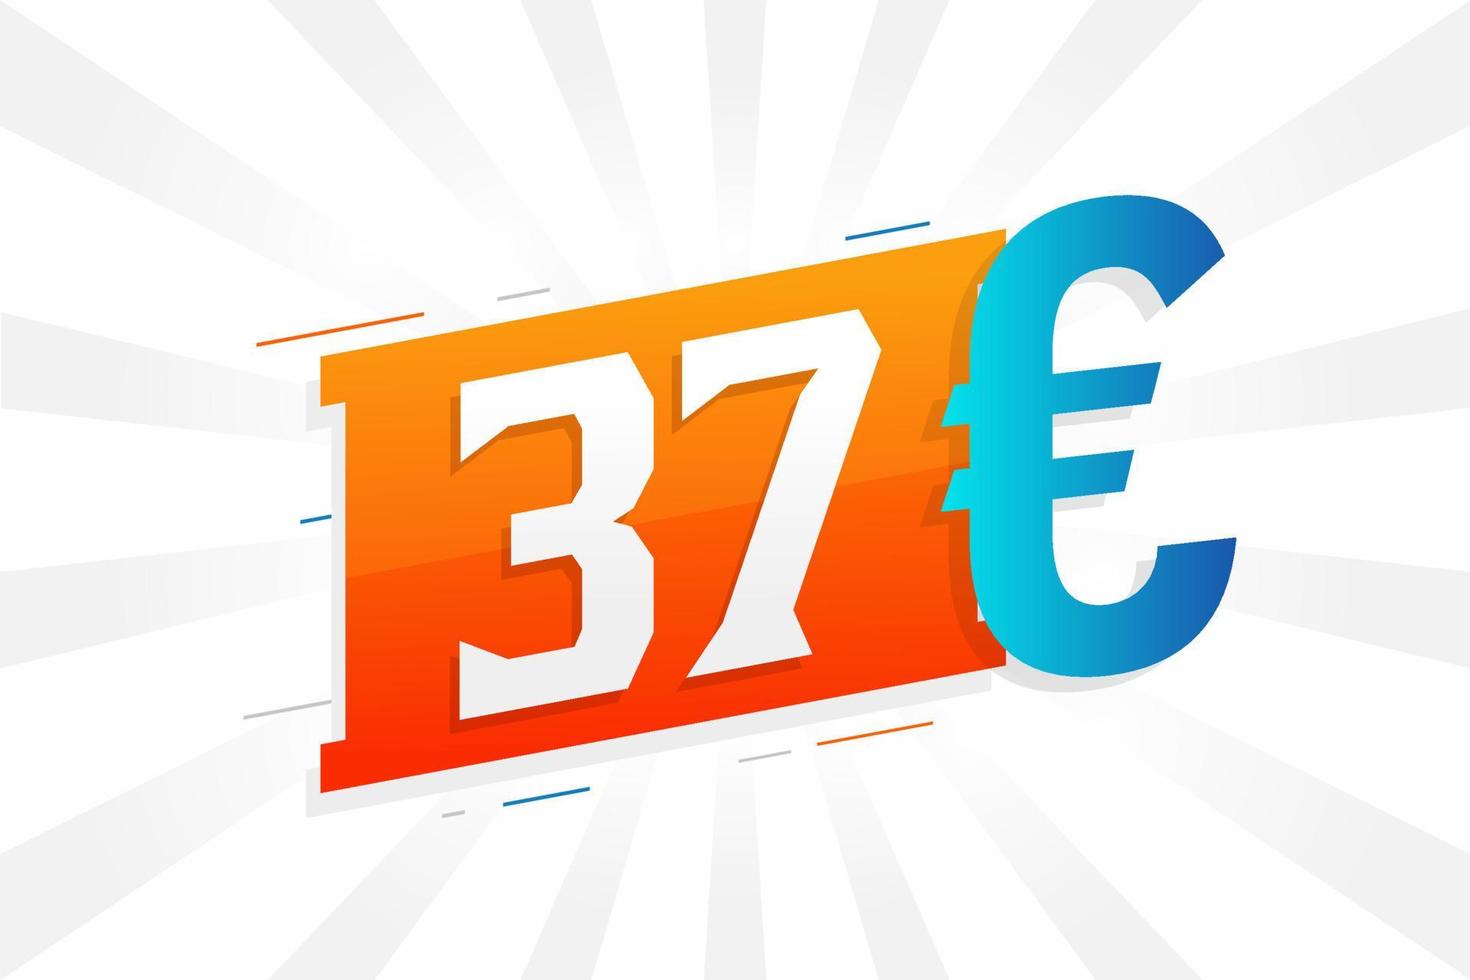 símbolo de texto de vetor de moeda de 37 euros. vetor de estoque de dinheiro da união europeia de 37 euros